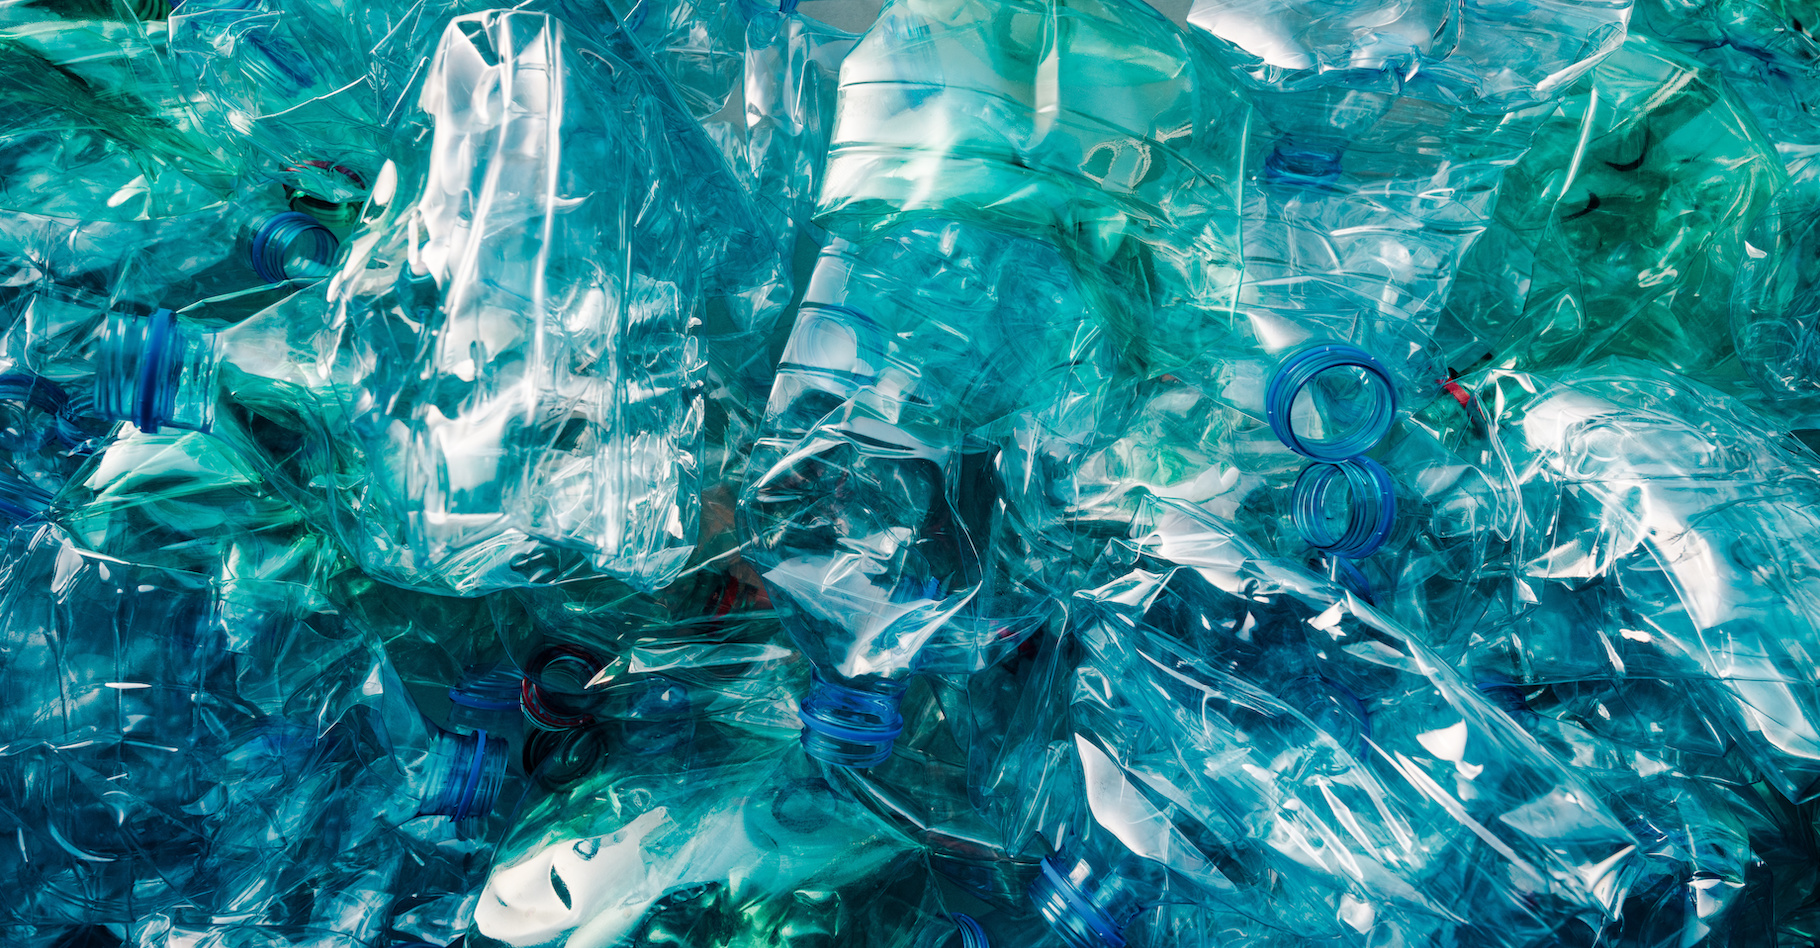 Chaque année, plus de 300.000 tonnes de bouteilles en plastique jetables sont produites en France. Mais des solutions arrivent sur le marché pour nous aider à adopter les habitudes de consommation plus responsables et plus saines. © Bits and Splits, Adobe Stock